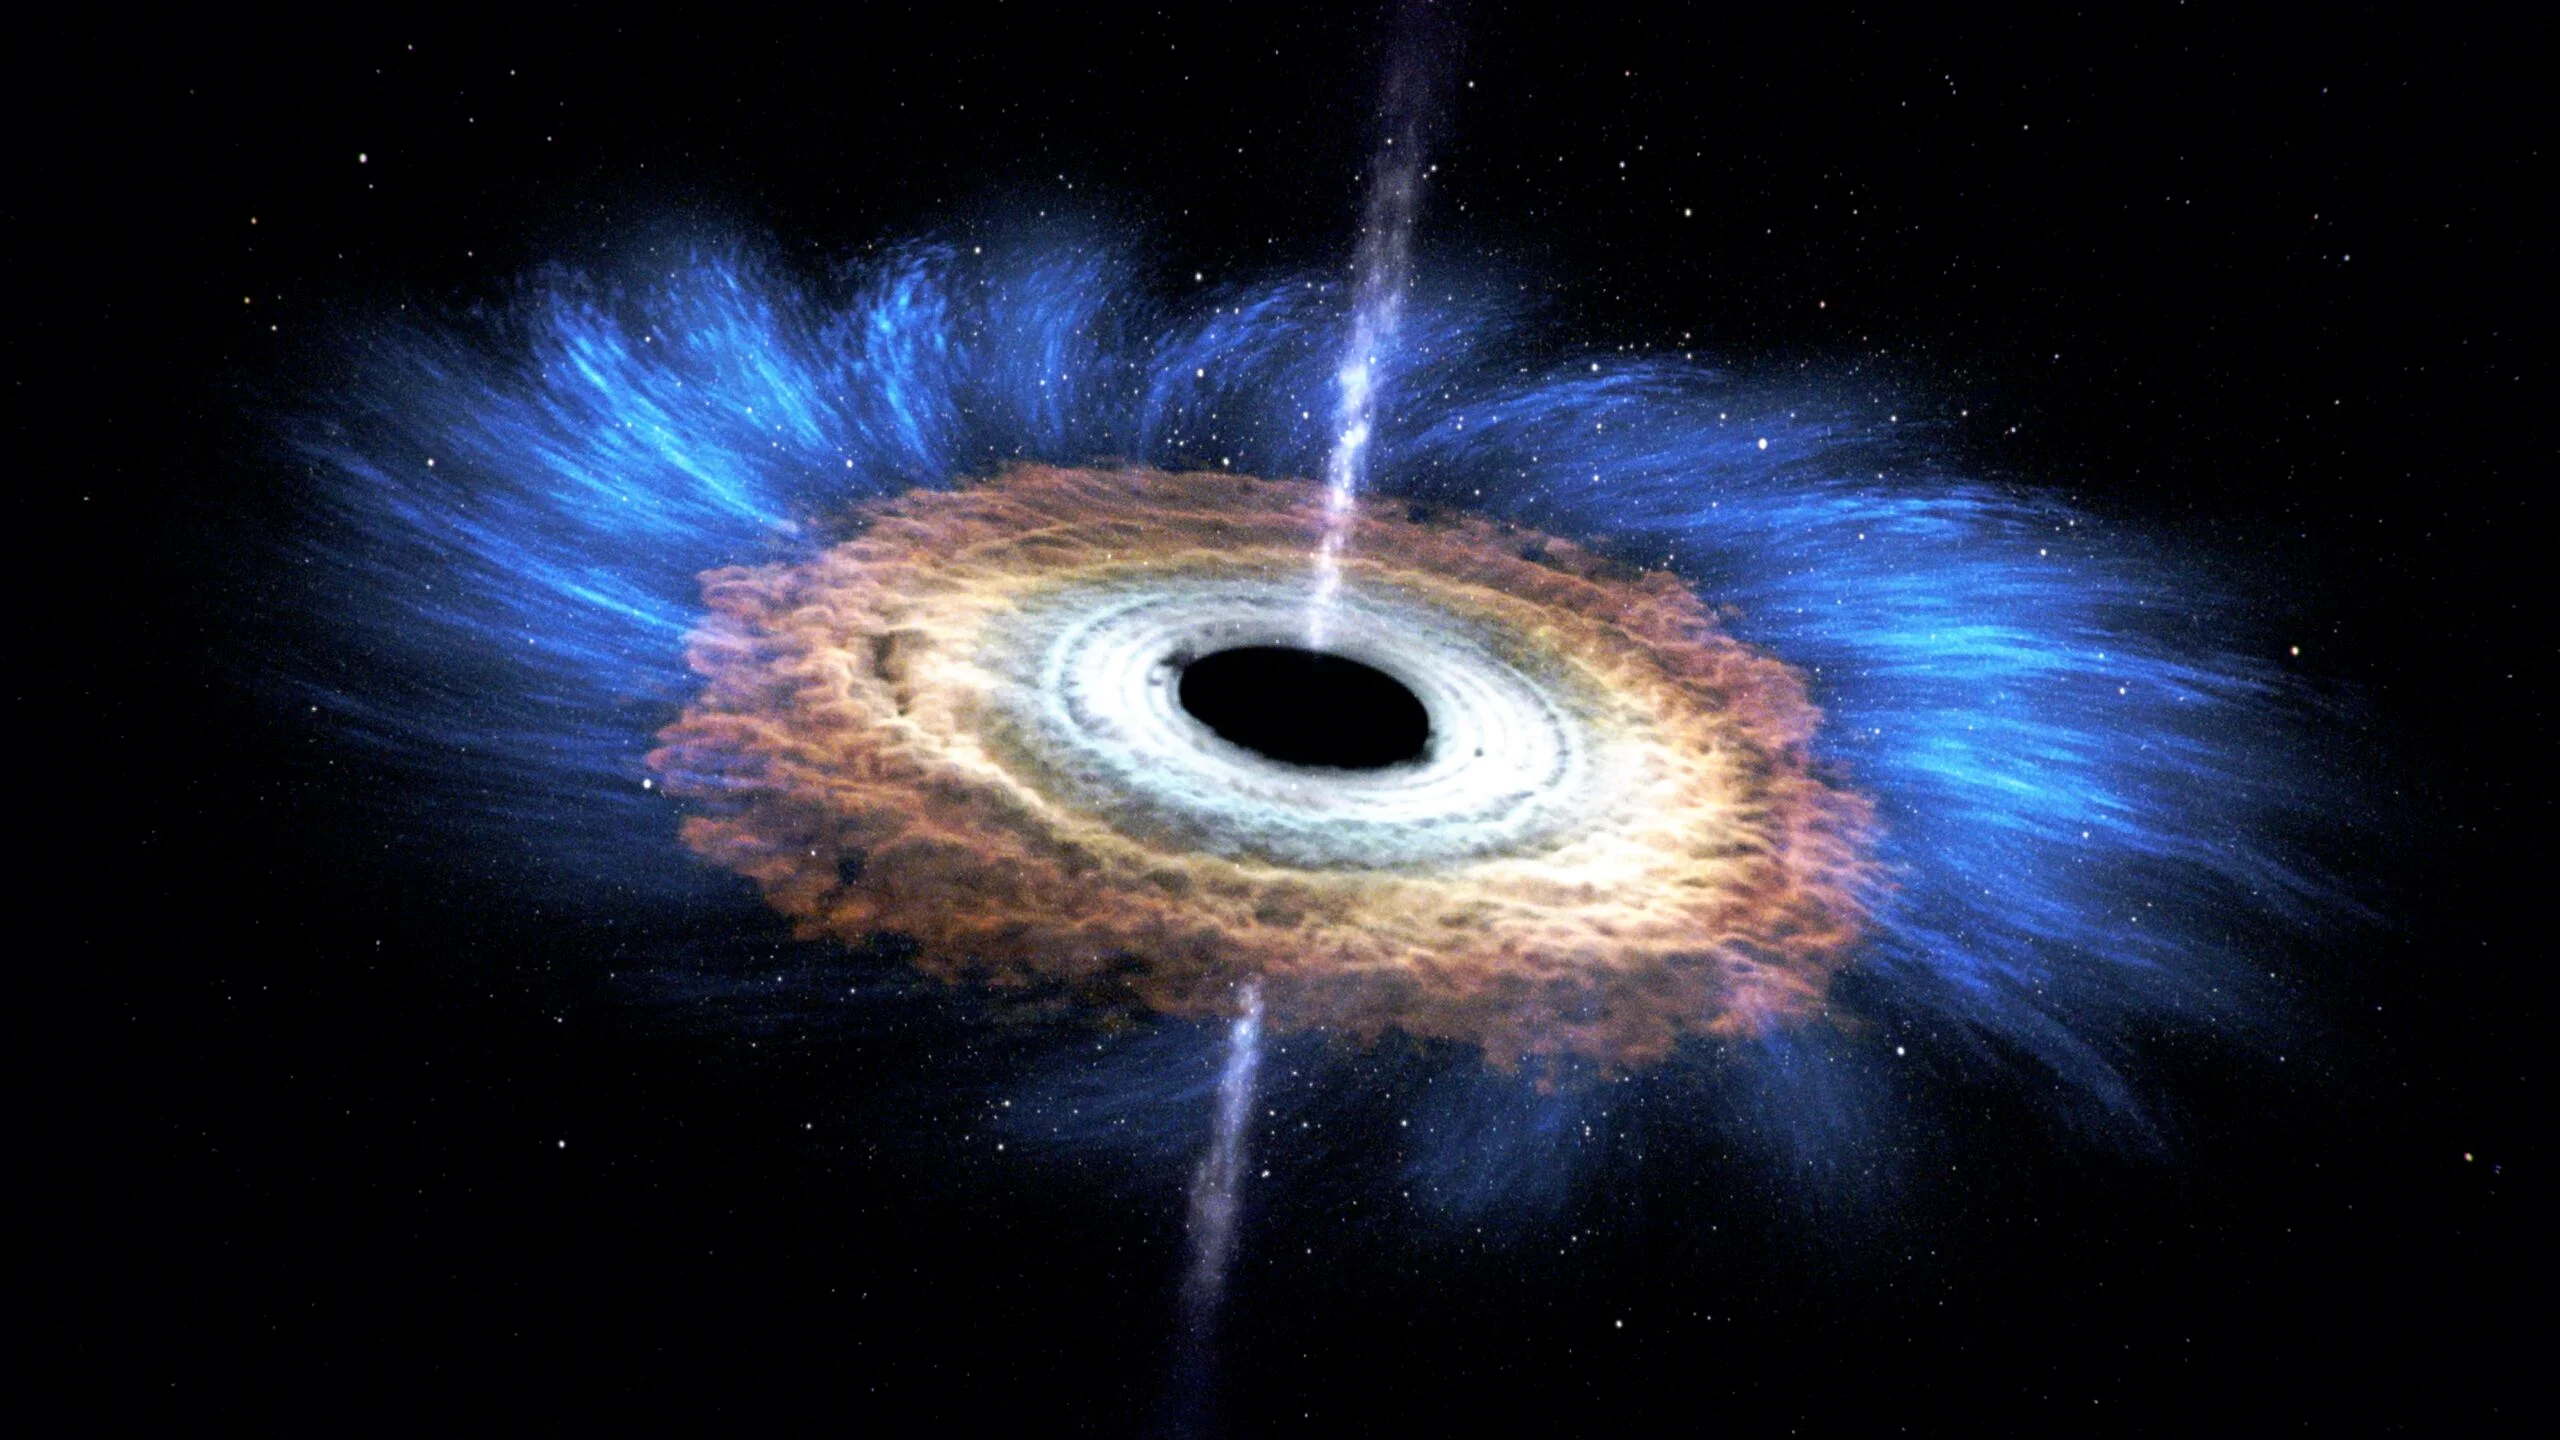 El agujero negro supermasivo del centro de nuestra galaxia está desgarrando y devorando un objeto desconocido X7 con una masa de unas 50 masas terrestres y una velocidad de 4 millones de km/h